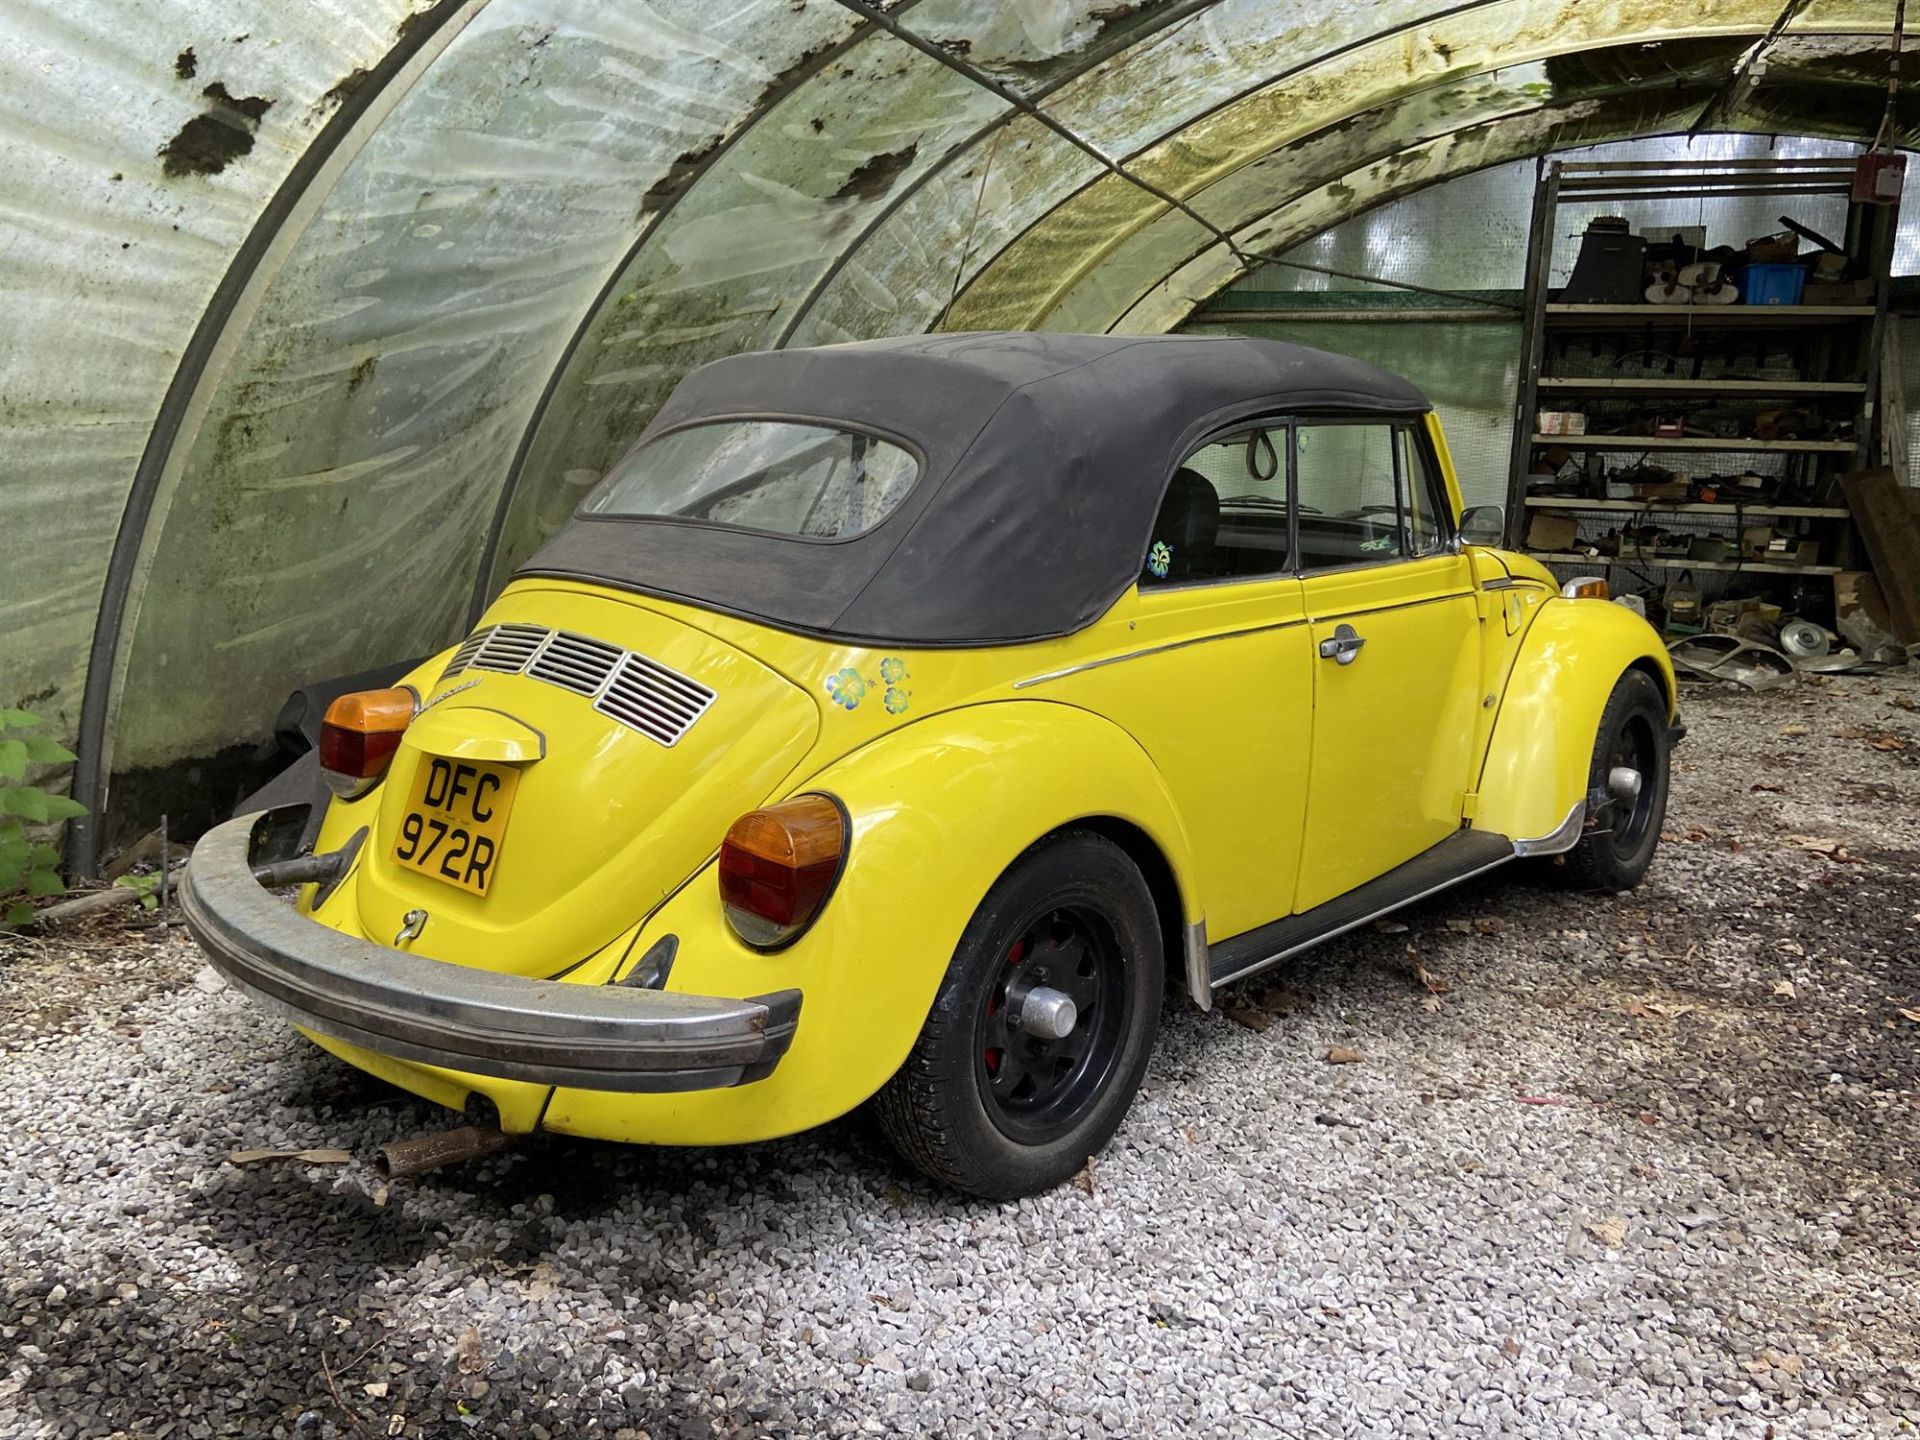 1977 Volkswagen Beetle Convertible - Image 2 of 6